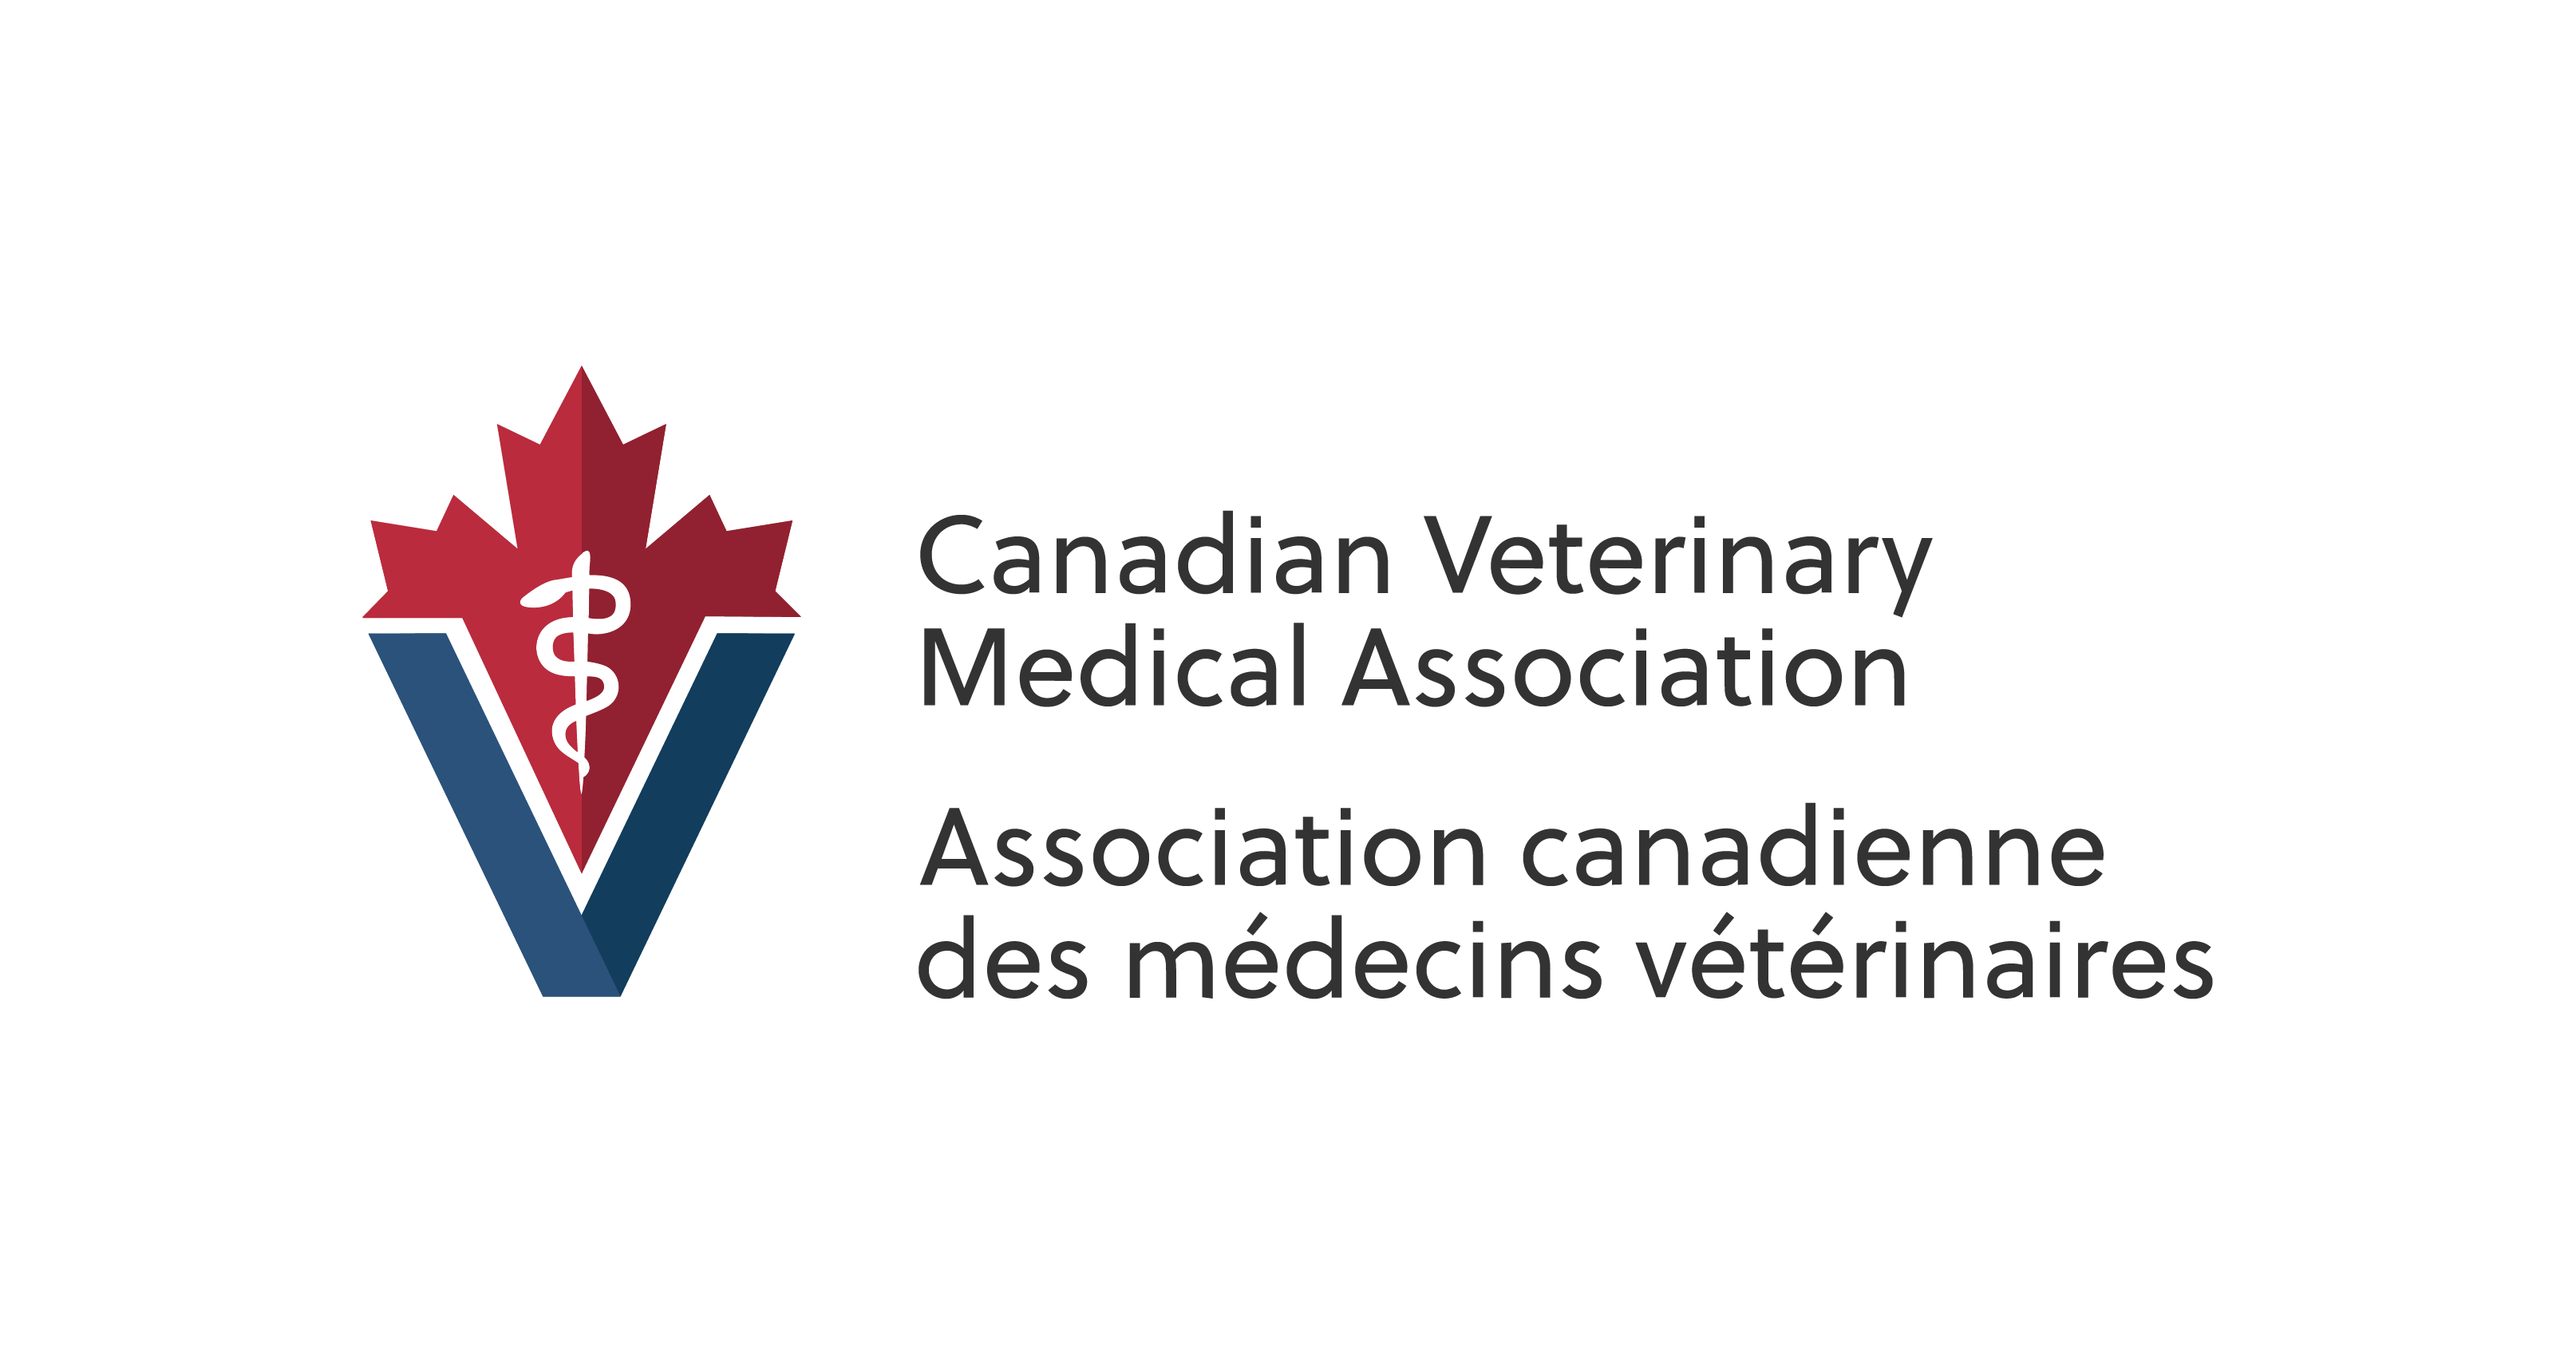 CVMA Logo